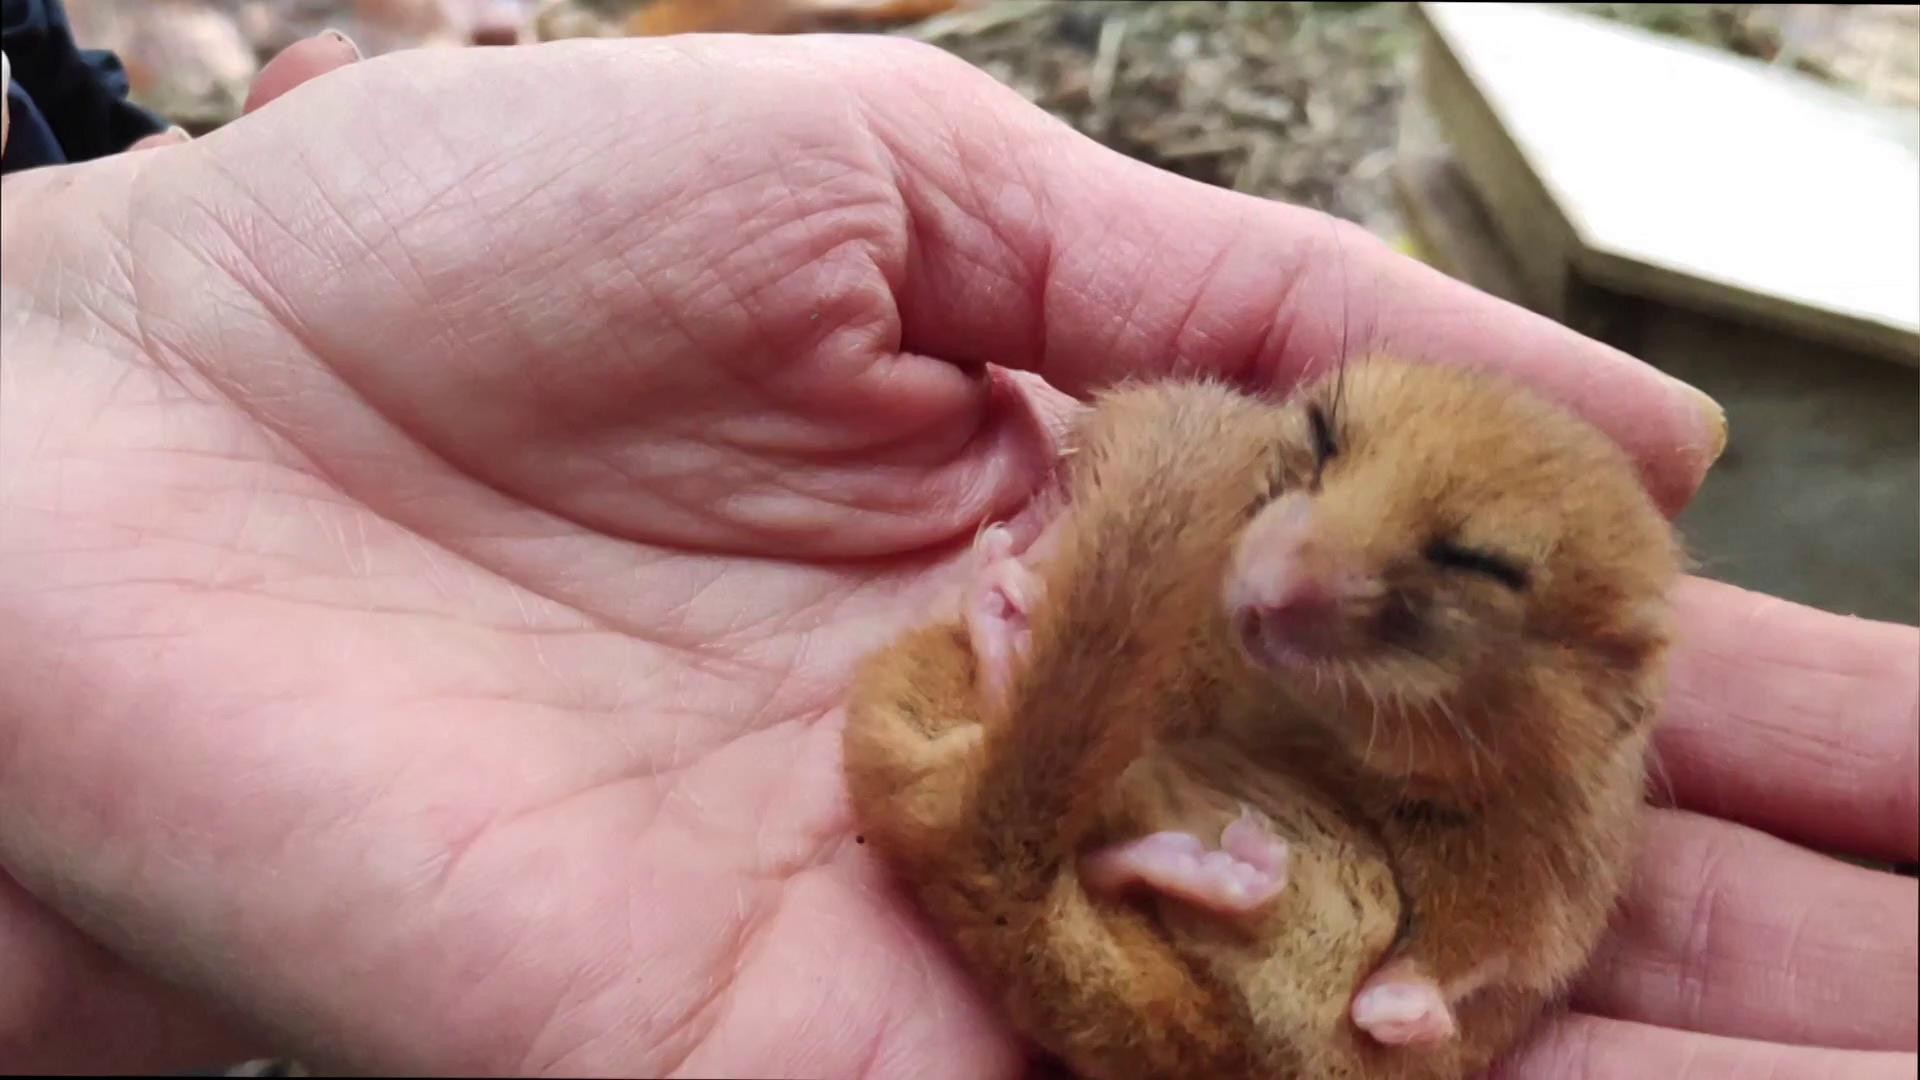 BBC - Ao hibernar, um arganaz pode diminuir sua temperatura corporal, chegando até a 2°C (Foto: BBC)